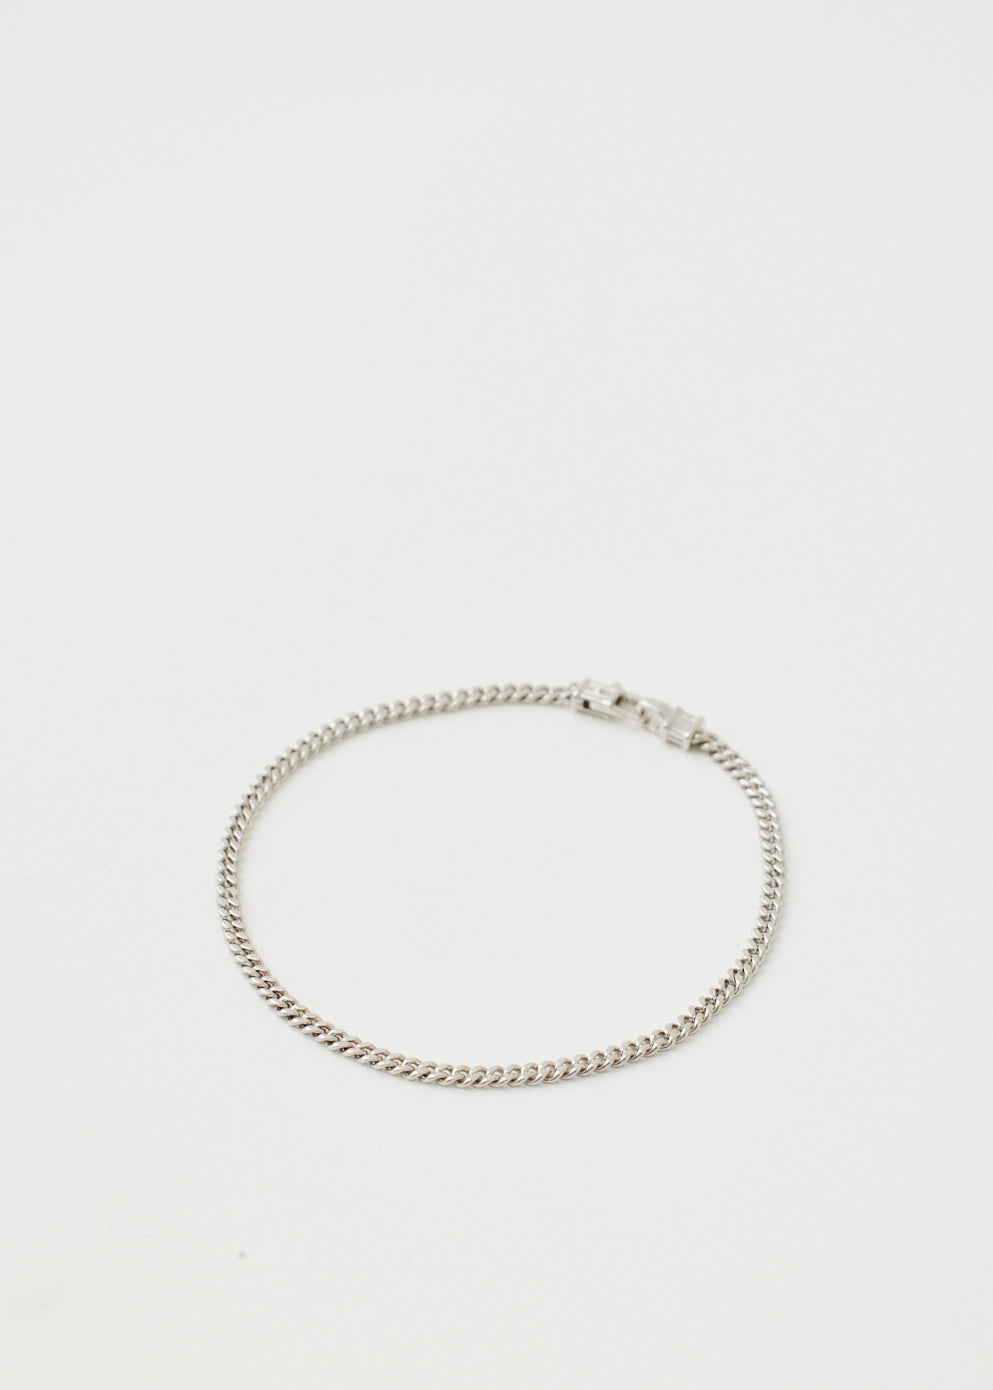 Curb Chain Bracelet 8.3"